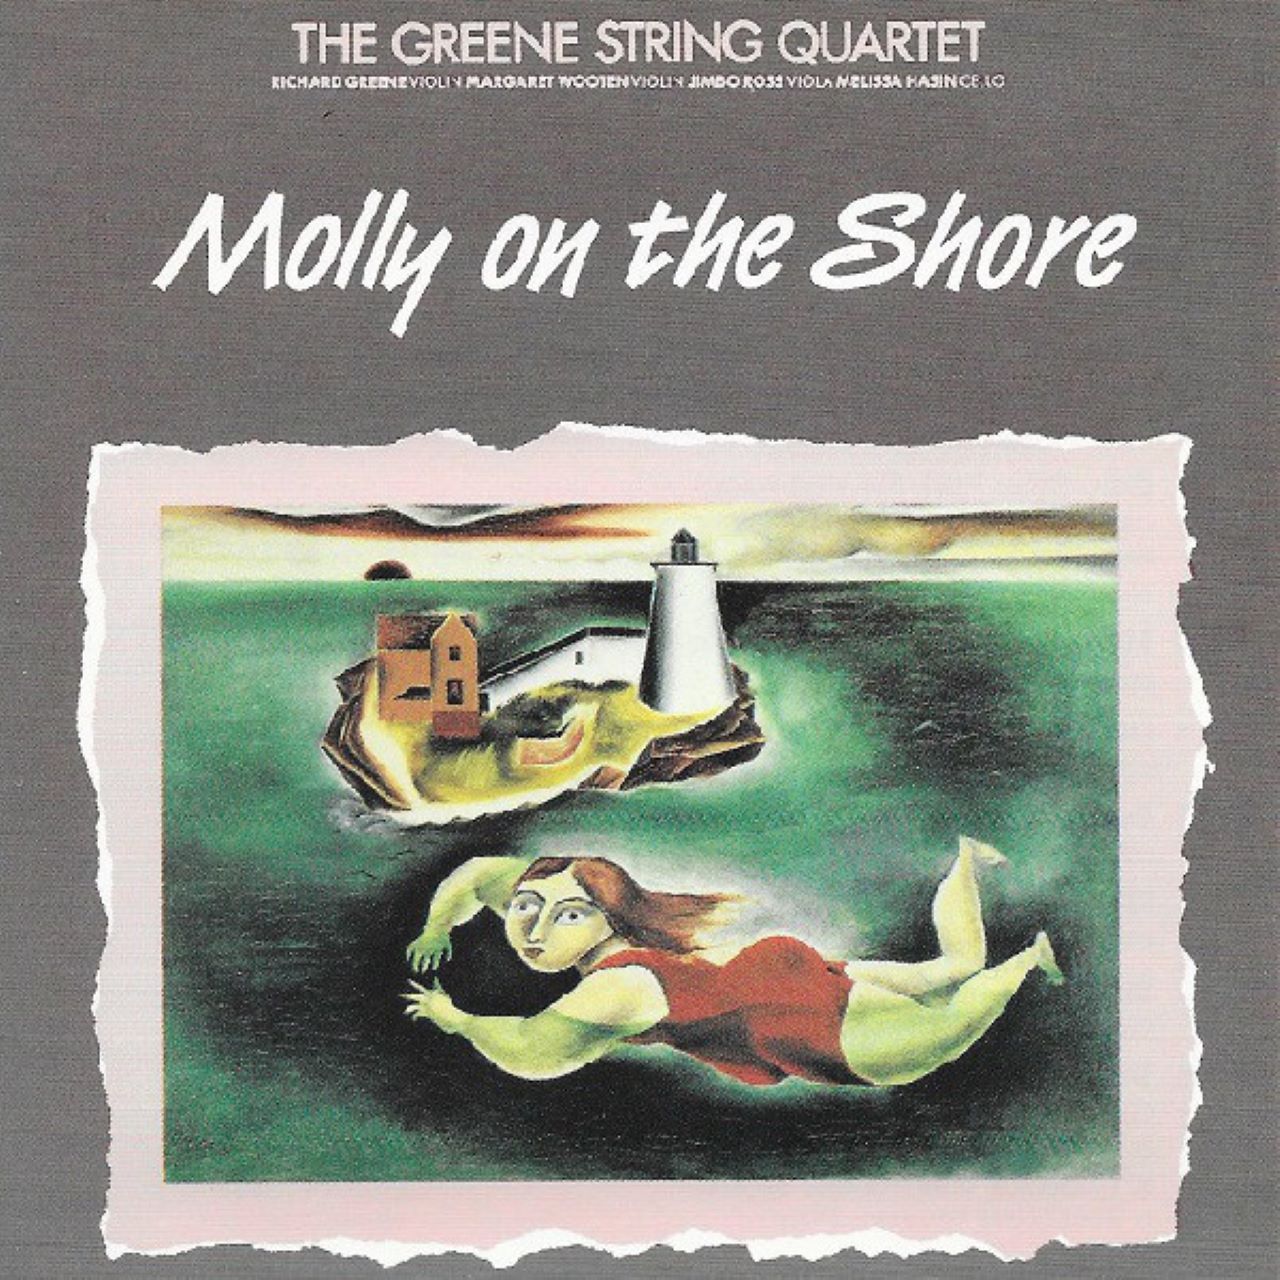 Greene Strìng Quartet - Molly On The Shore cover album